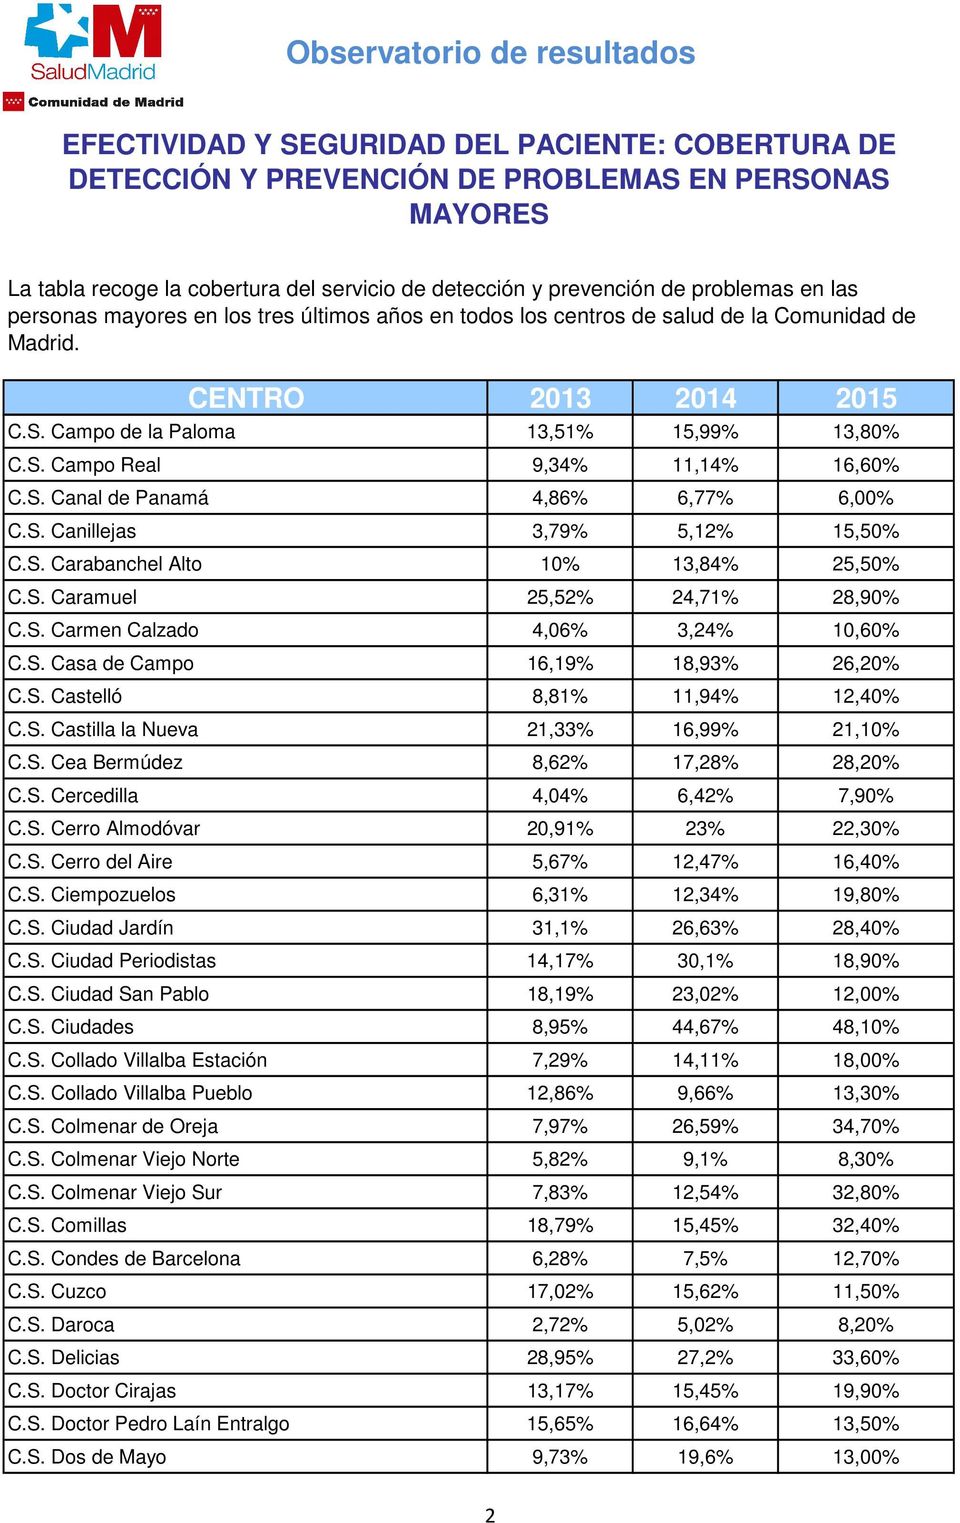 S. Cerro Almodóvar 20,91% 23% 22,30% C.S. Cerro del Aire 5,67% 12,47% 16,40% C.S. Ciempozuelos 6,31% 12,34% 19,80% C.S. Ciudad Jardín 31,1% 26,63% 28,40% C.S. Ciudad Periodistas 14,17% 30,1% 18,90% C.